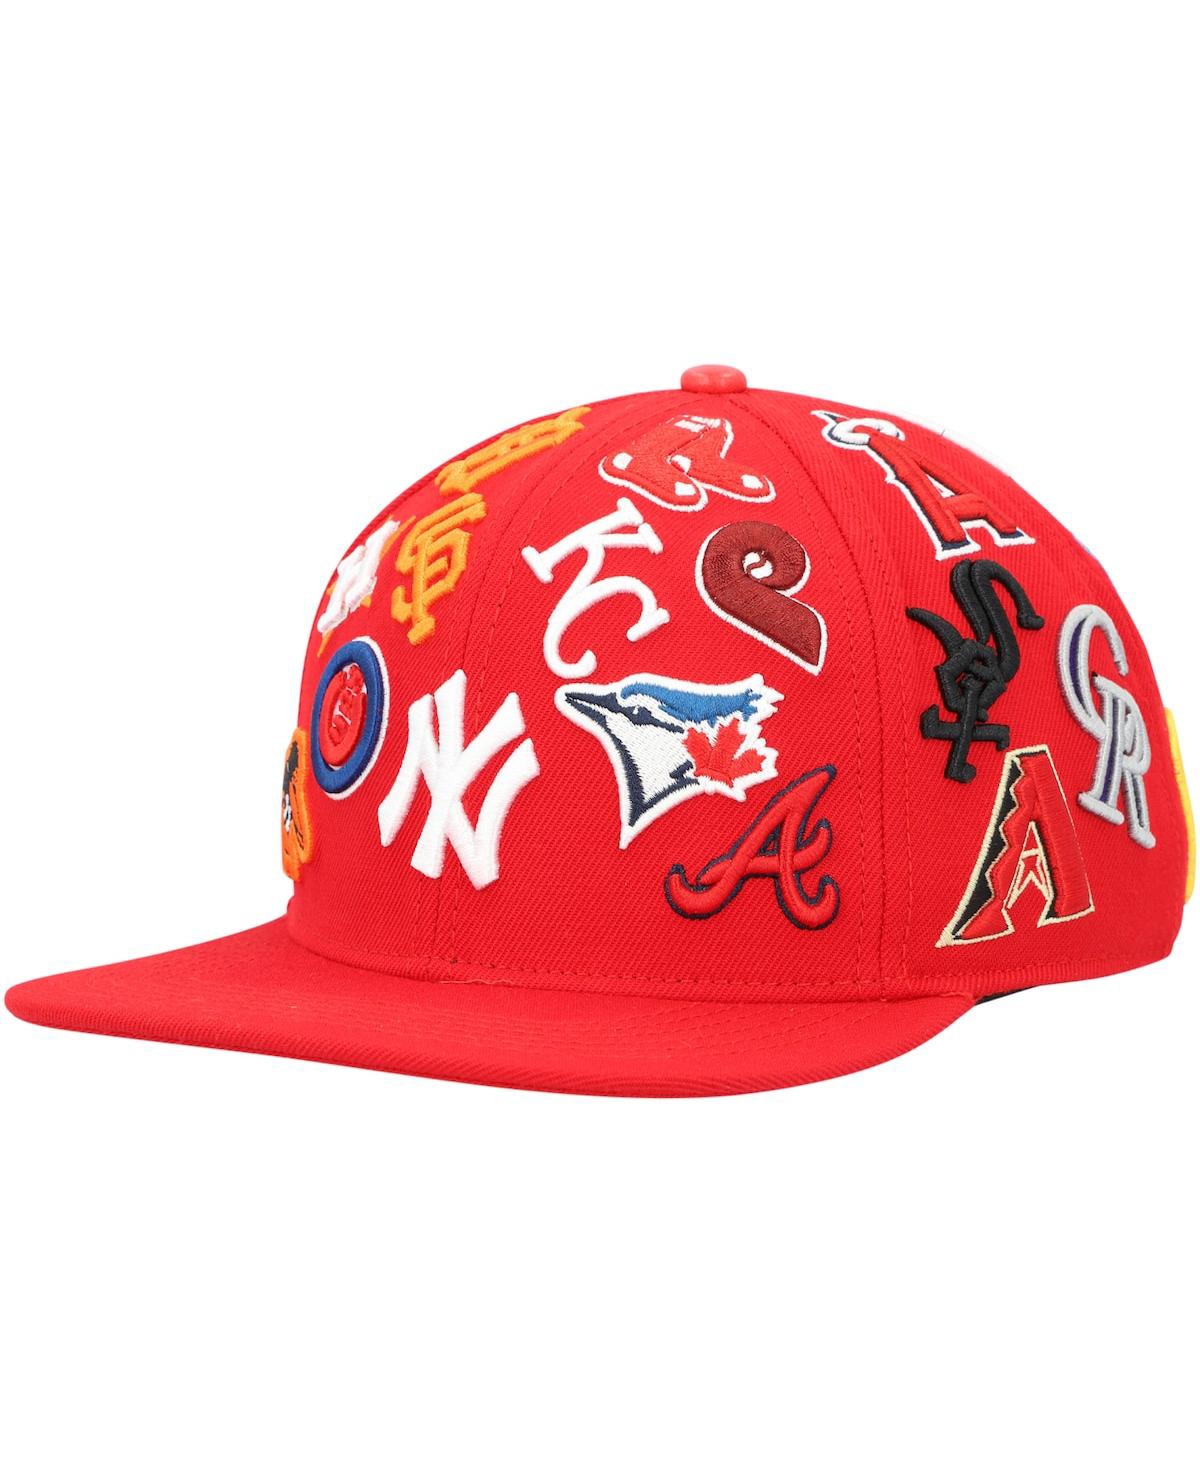 Shop Pro Standard Men's  Red Mlb Pro League Wool Snapback Hat